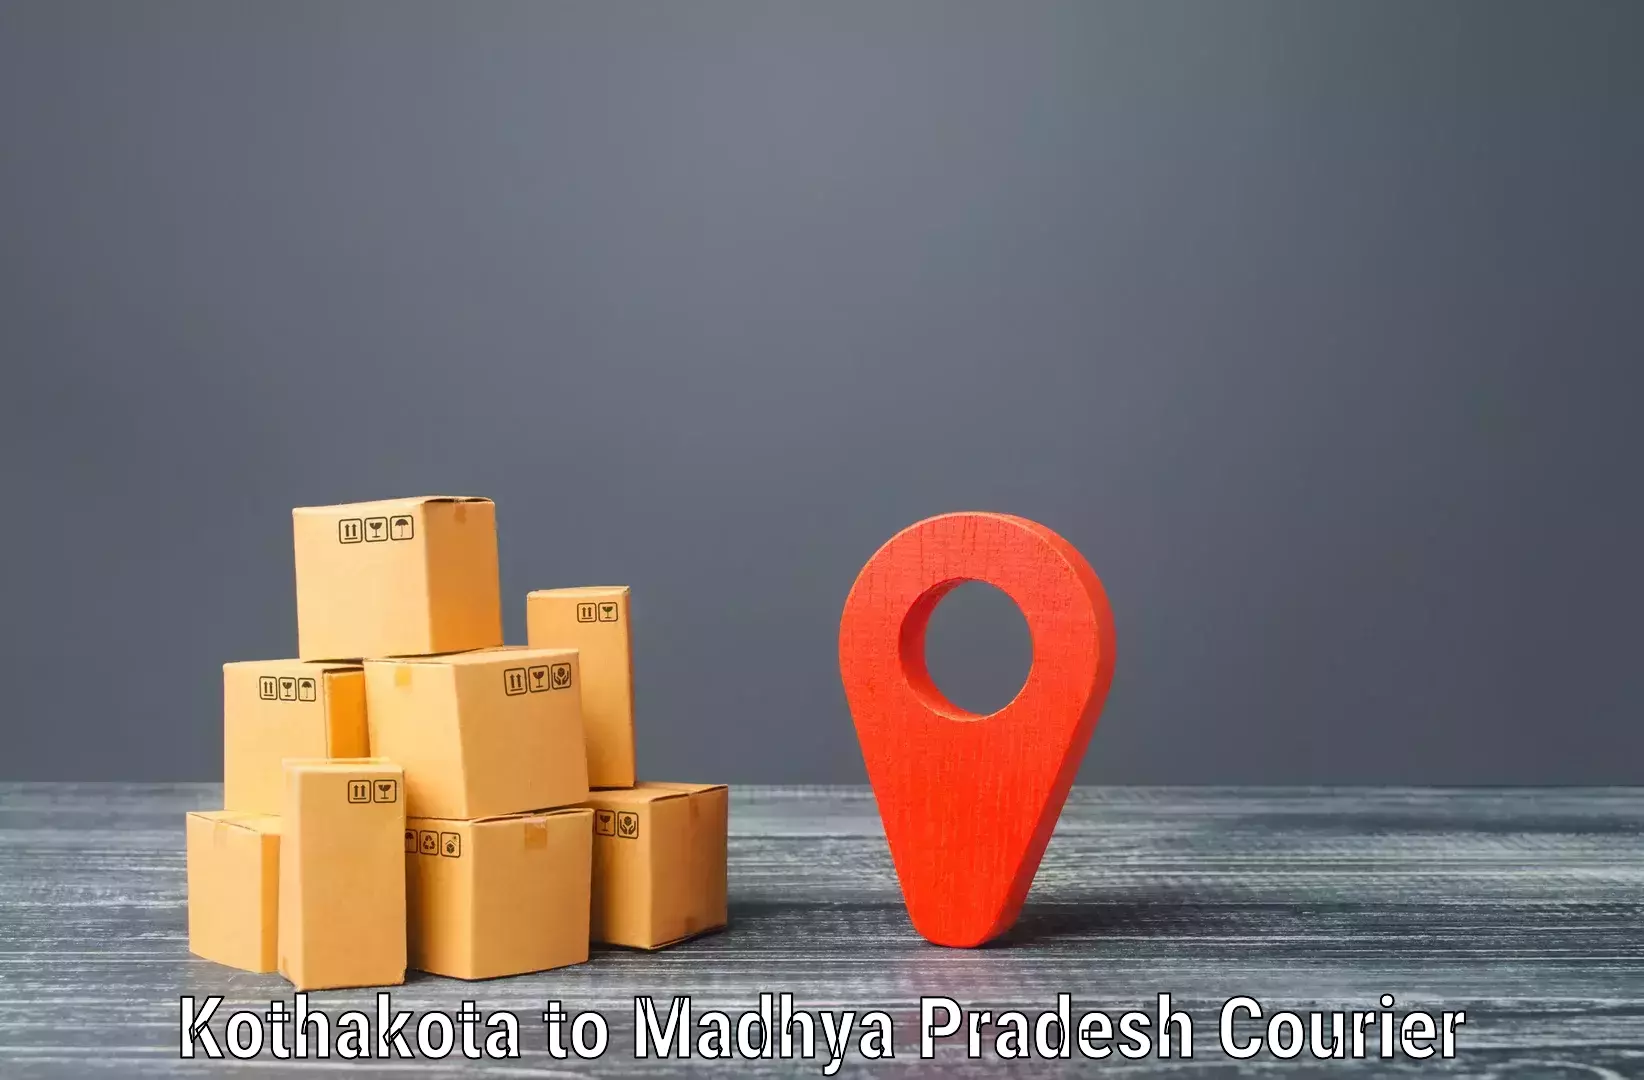 User-friendly courier app Kothakota to Badnagar